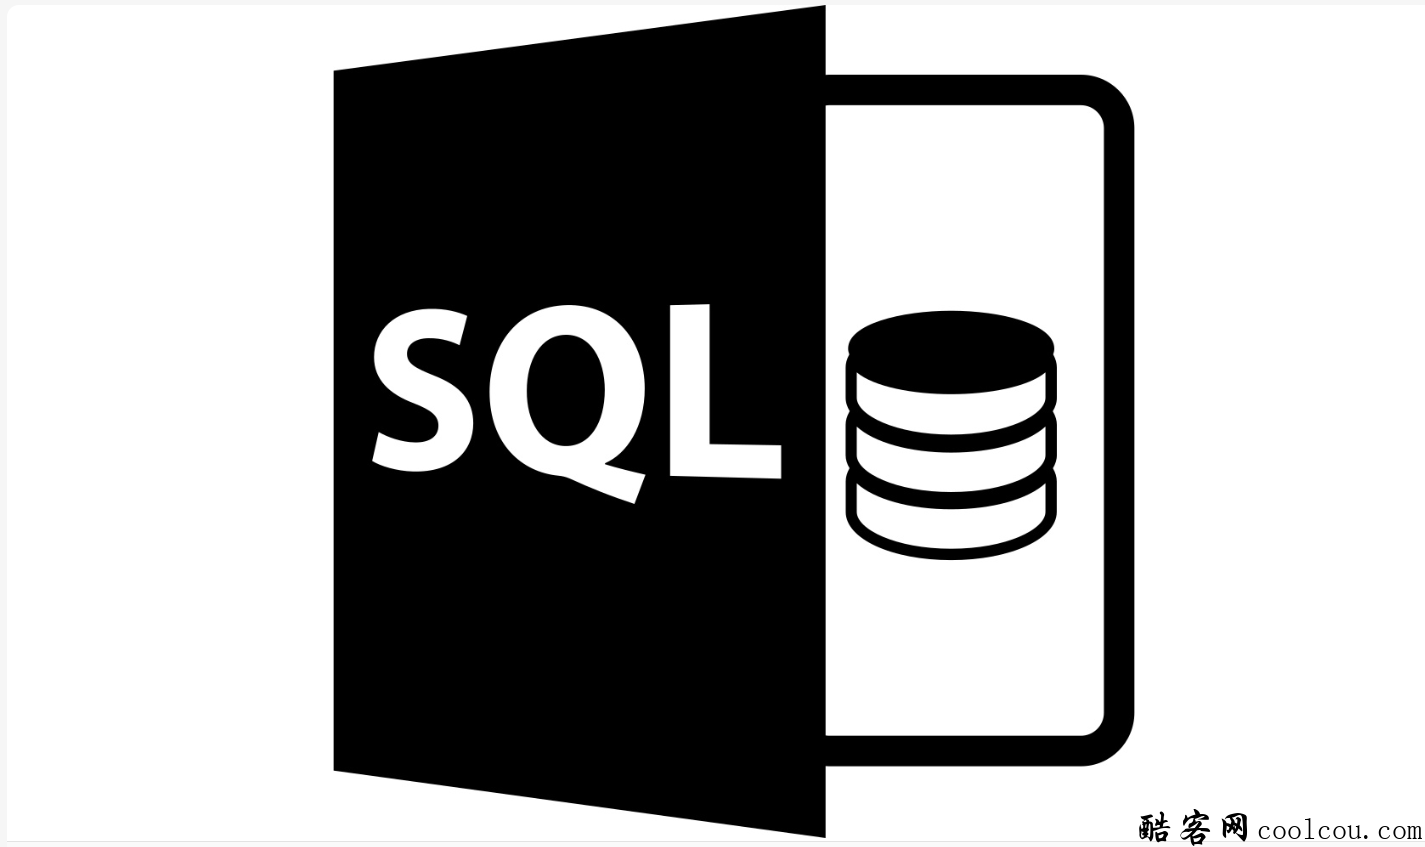 SQL教程